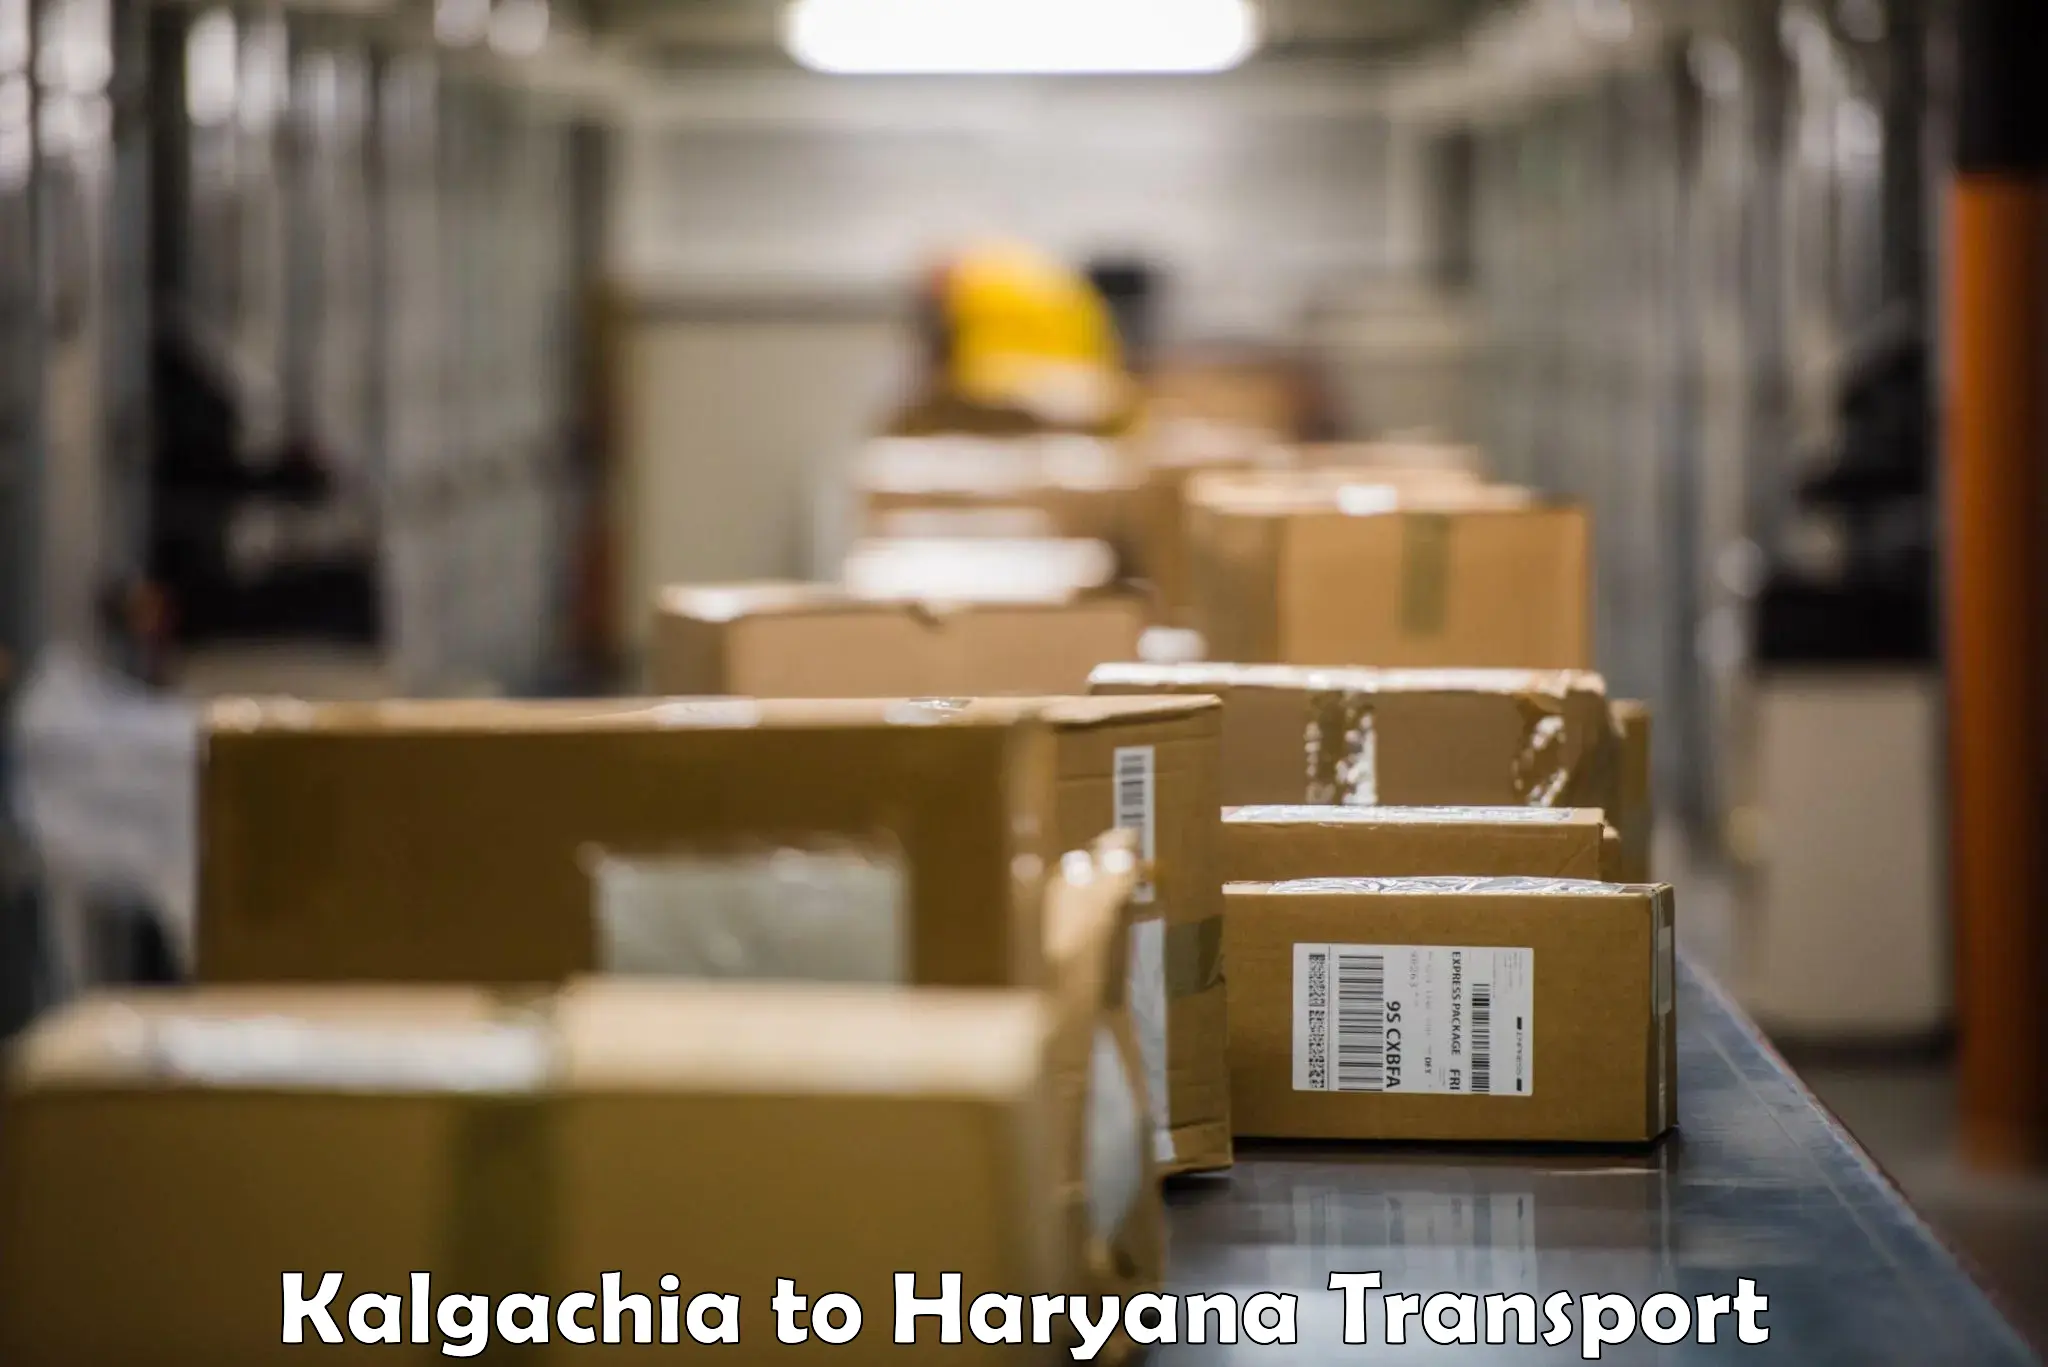 Door to door transport services Kalgachia to Bilaspur Haryana